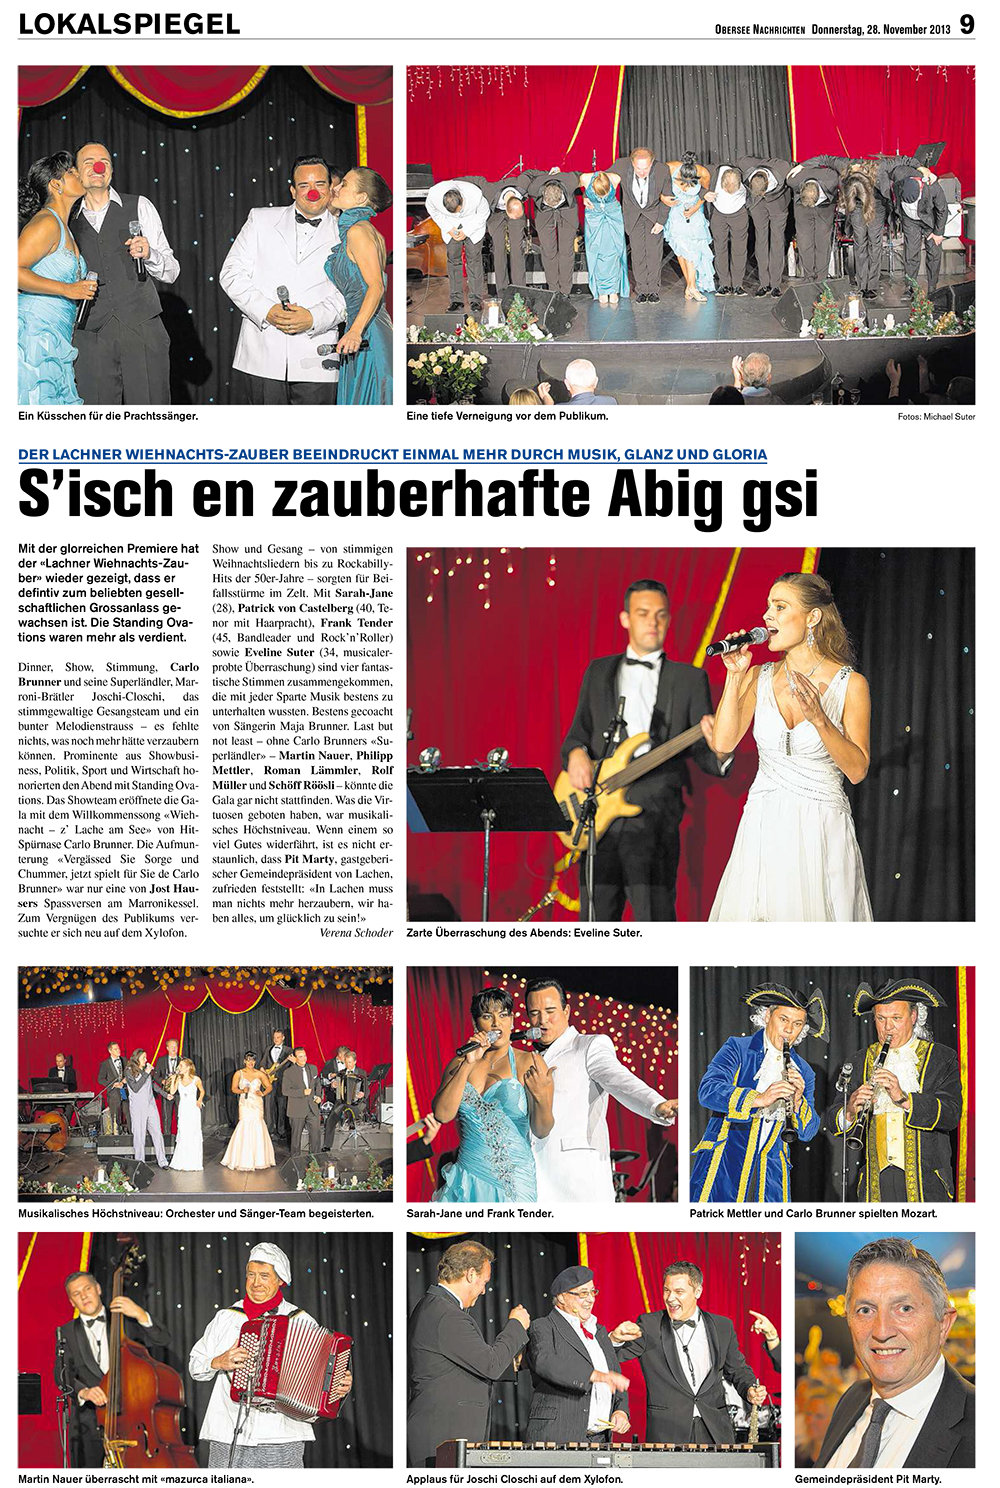 Obersee Nachrichten / November 2013